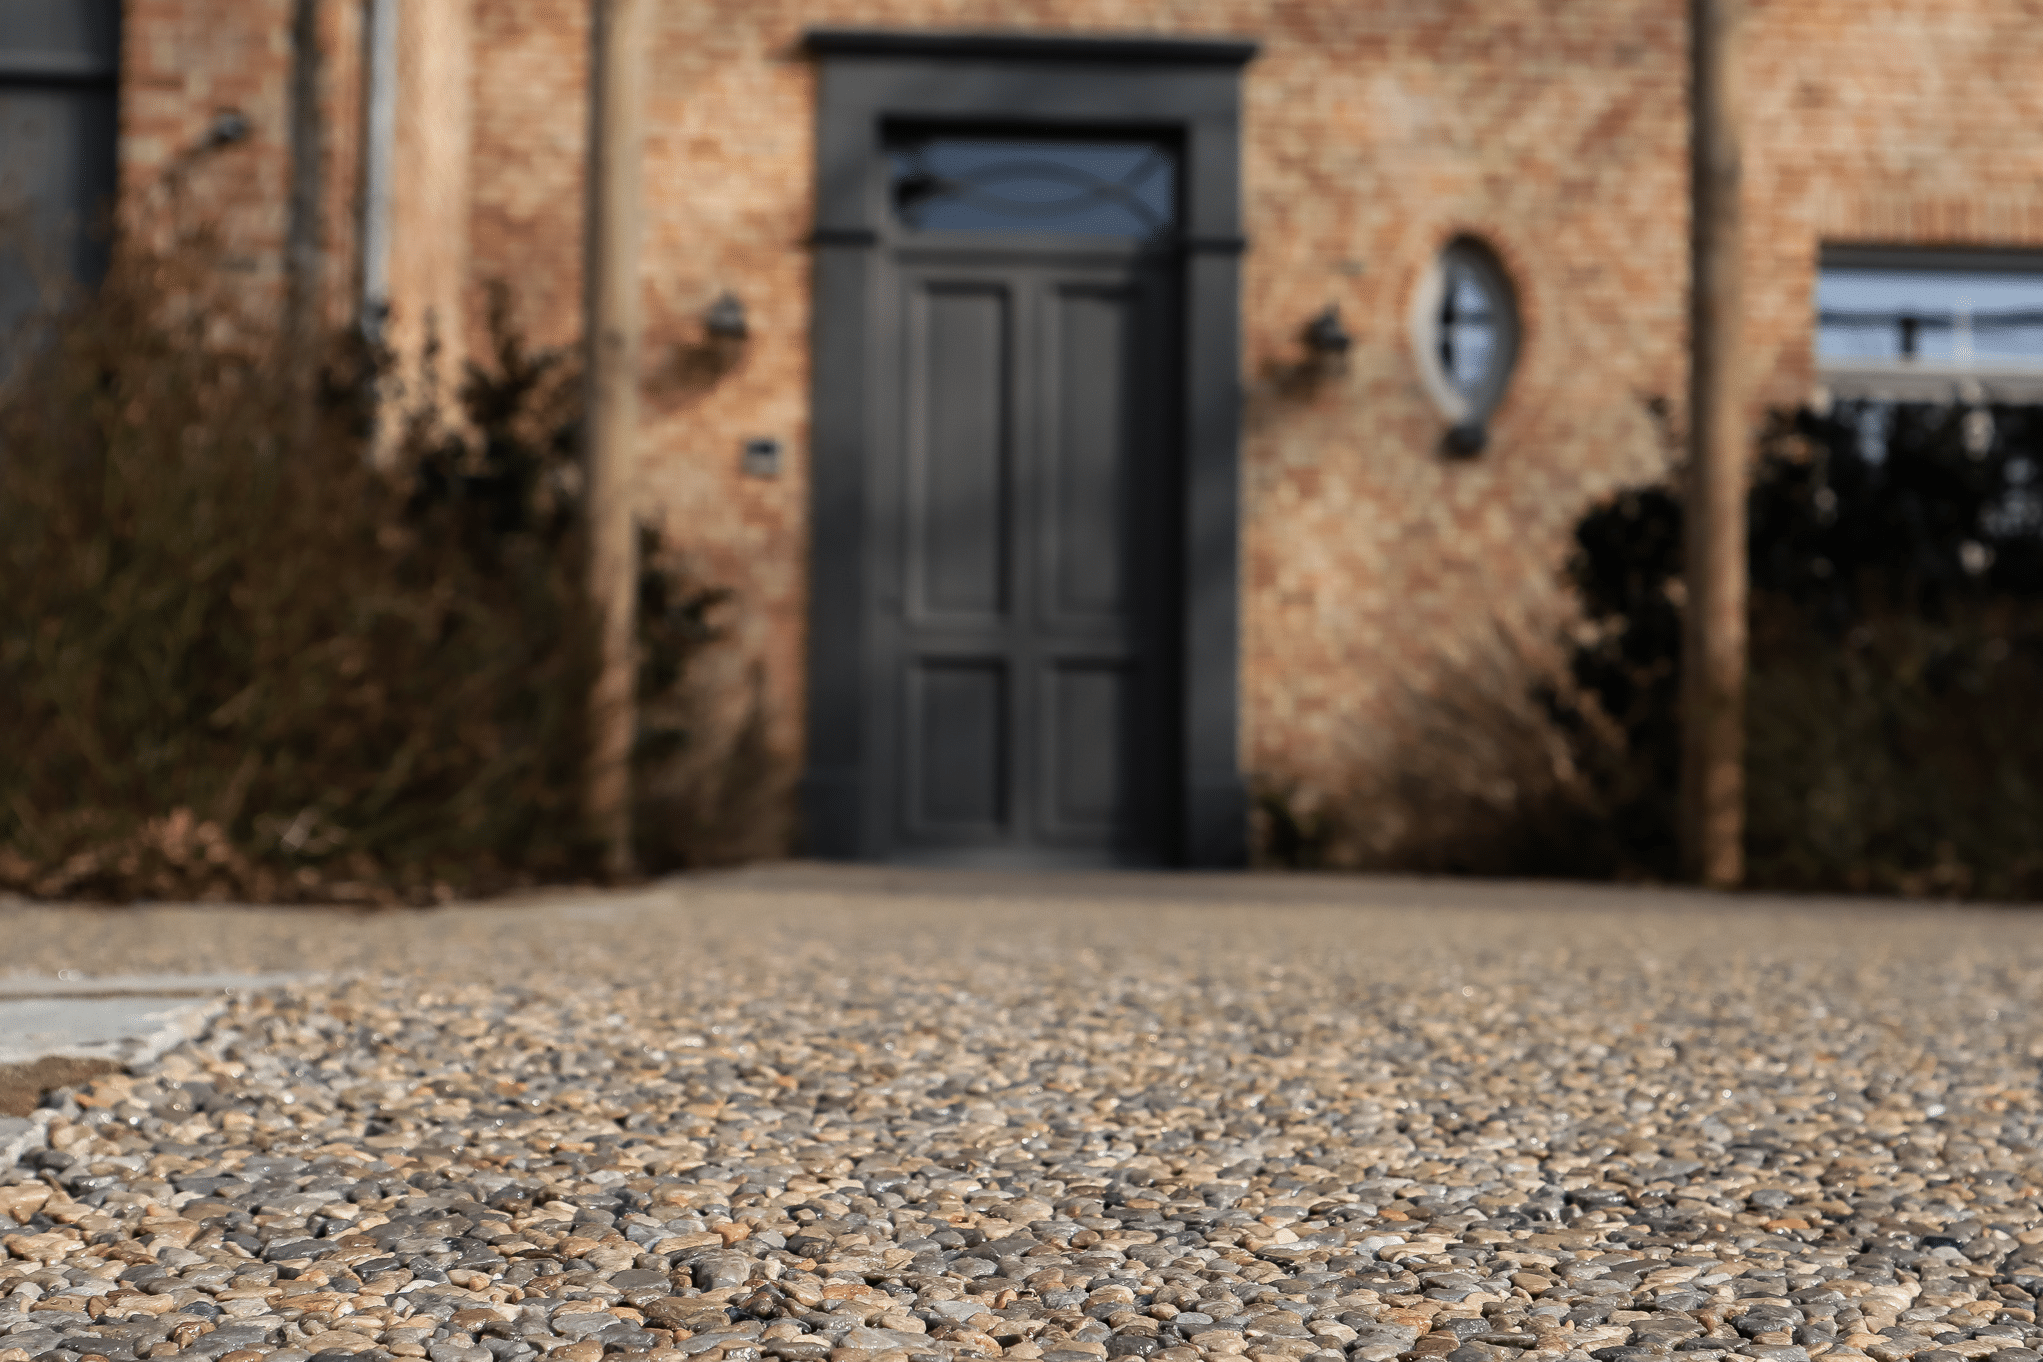 stoneCARPET präsentiert einen rötlichen Natursteinteppich im Eingangsbereich eines Hauses mit schwarzer Eingangstüre.